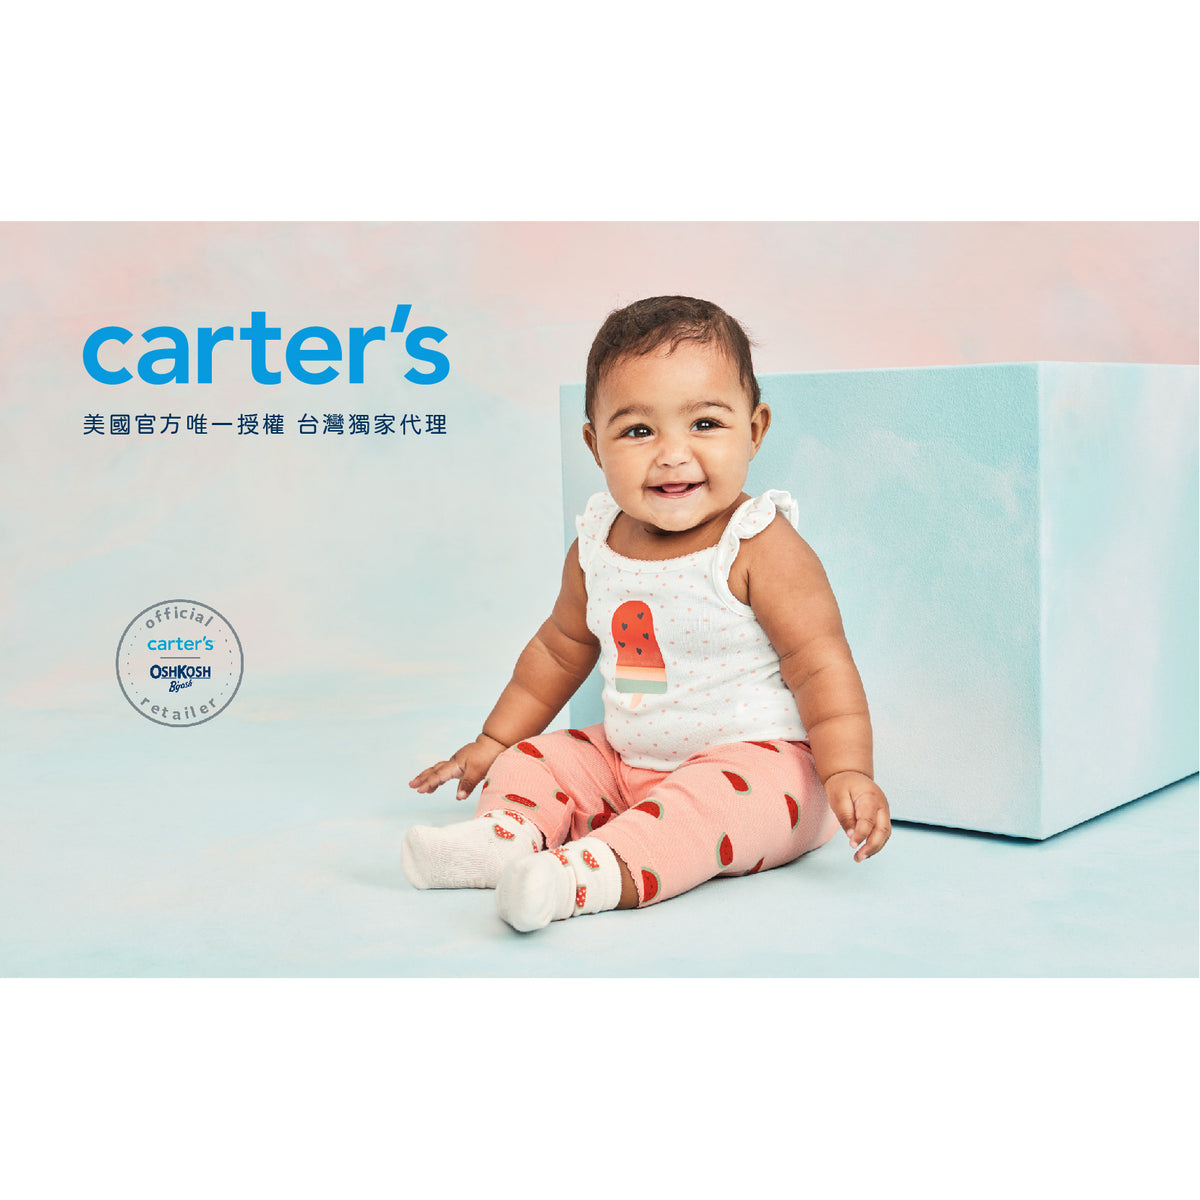 Carter's 紫色薰衣草無袖洋裝(6M-24M)